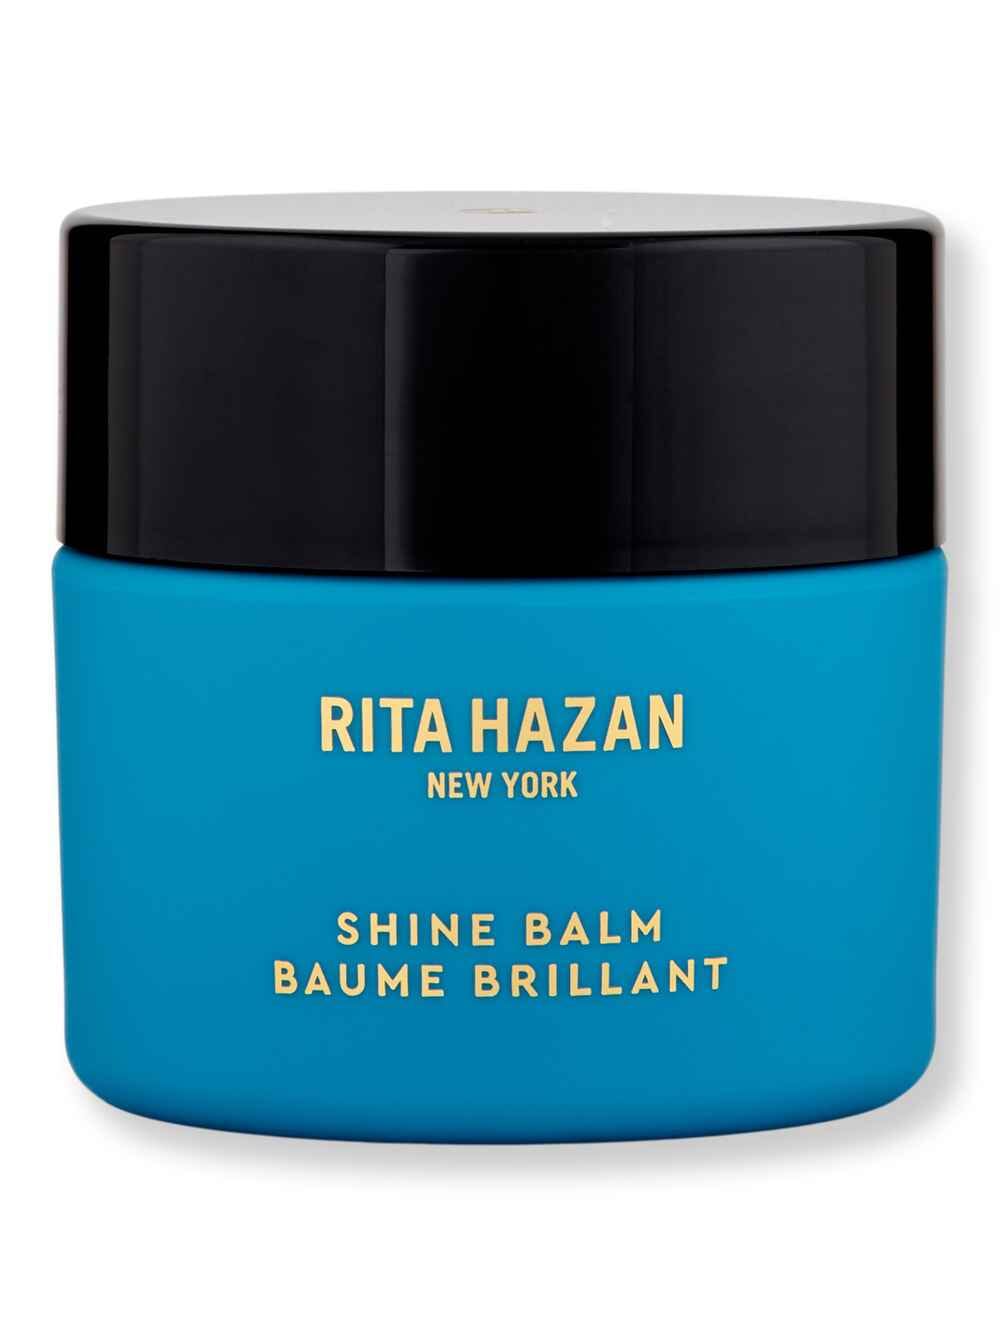 Rita Hazan Rita Hazan Shine Balm 1.5 oz Styling Treatments 